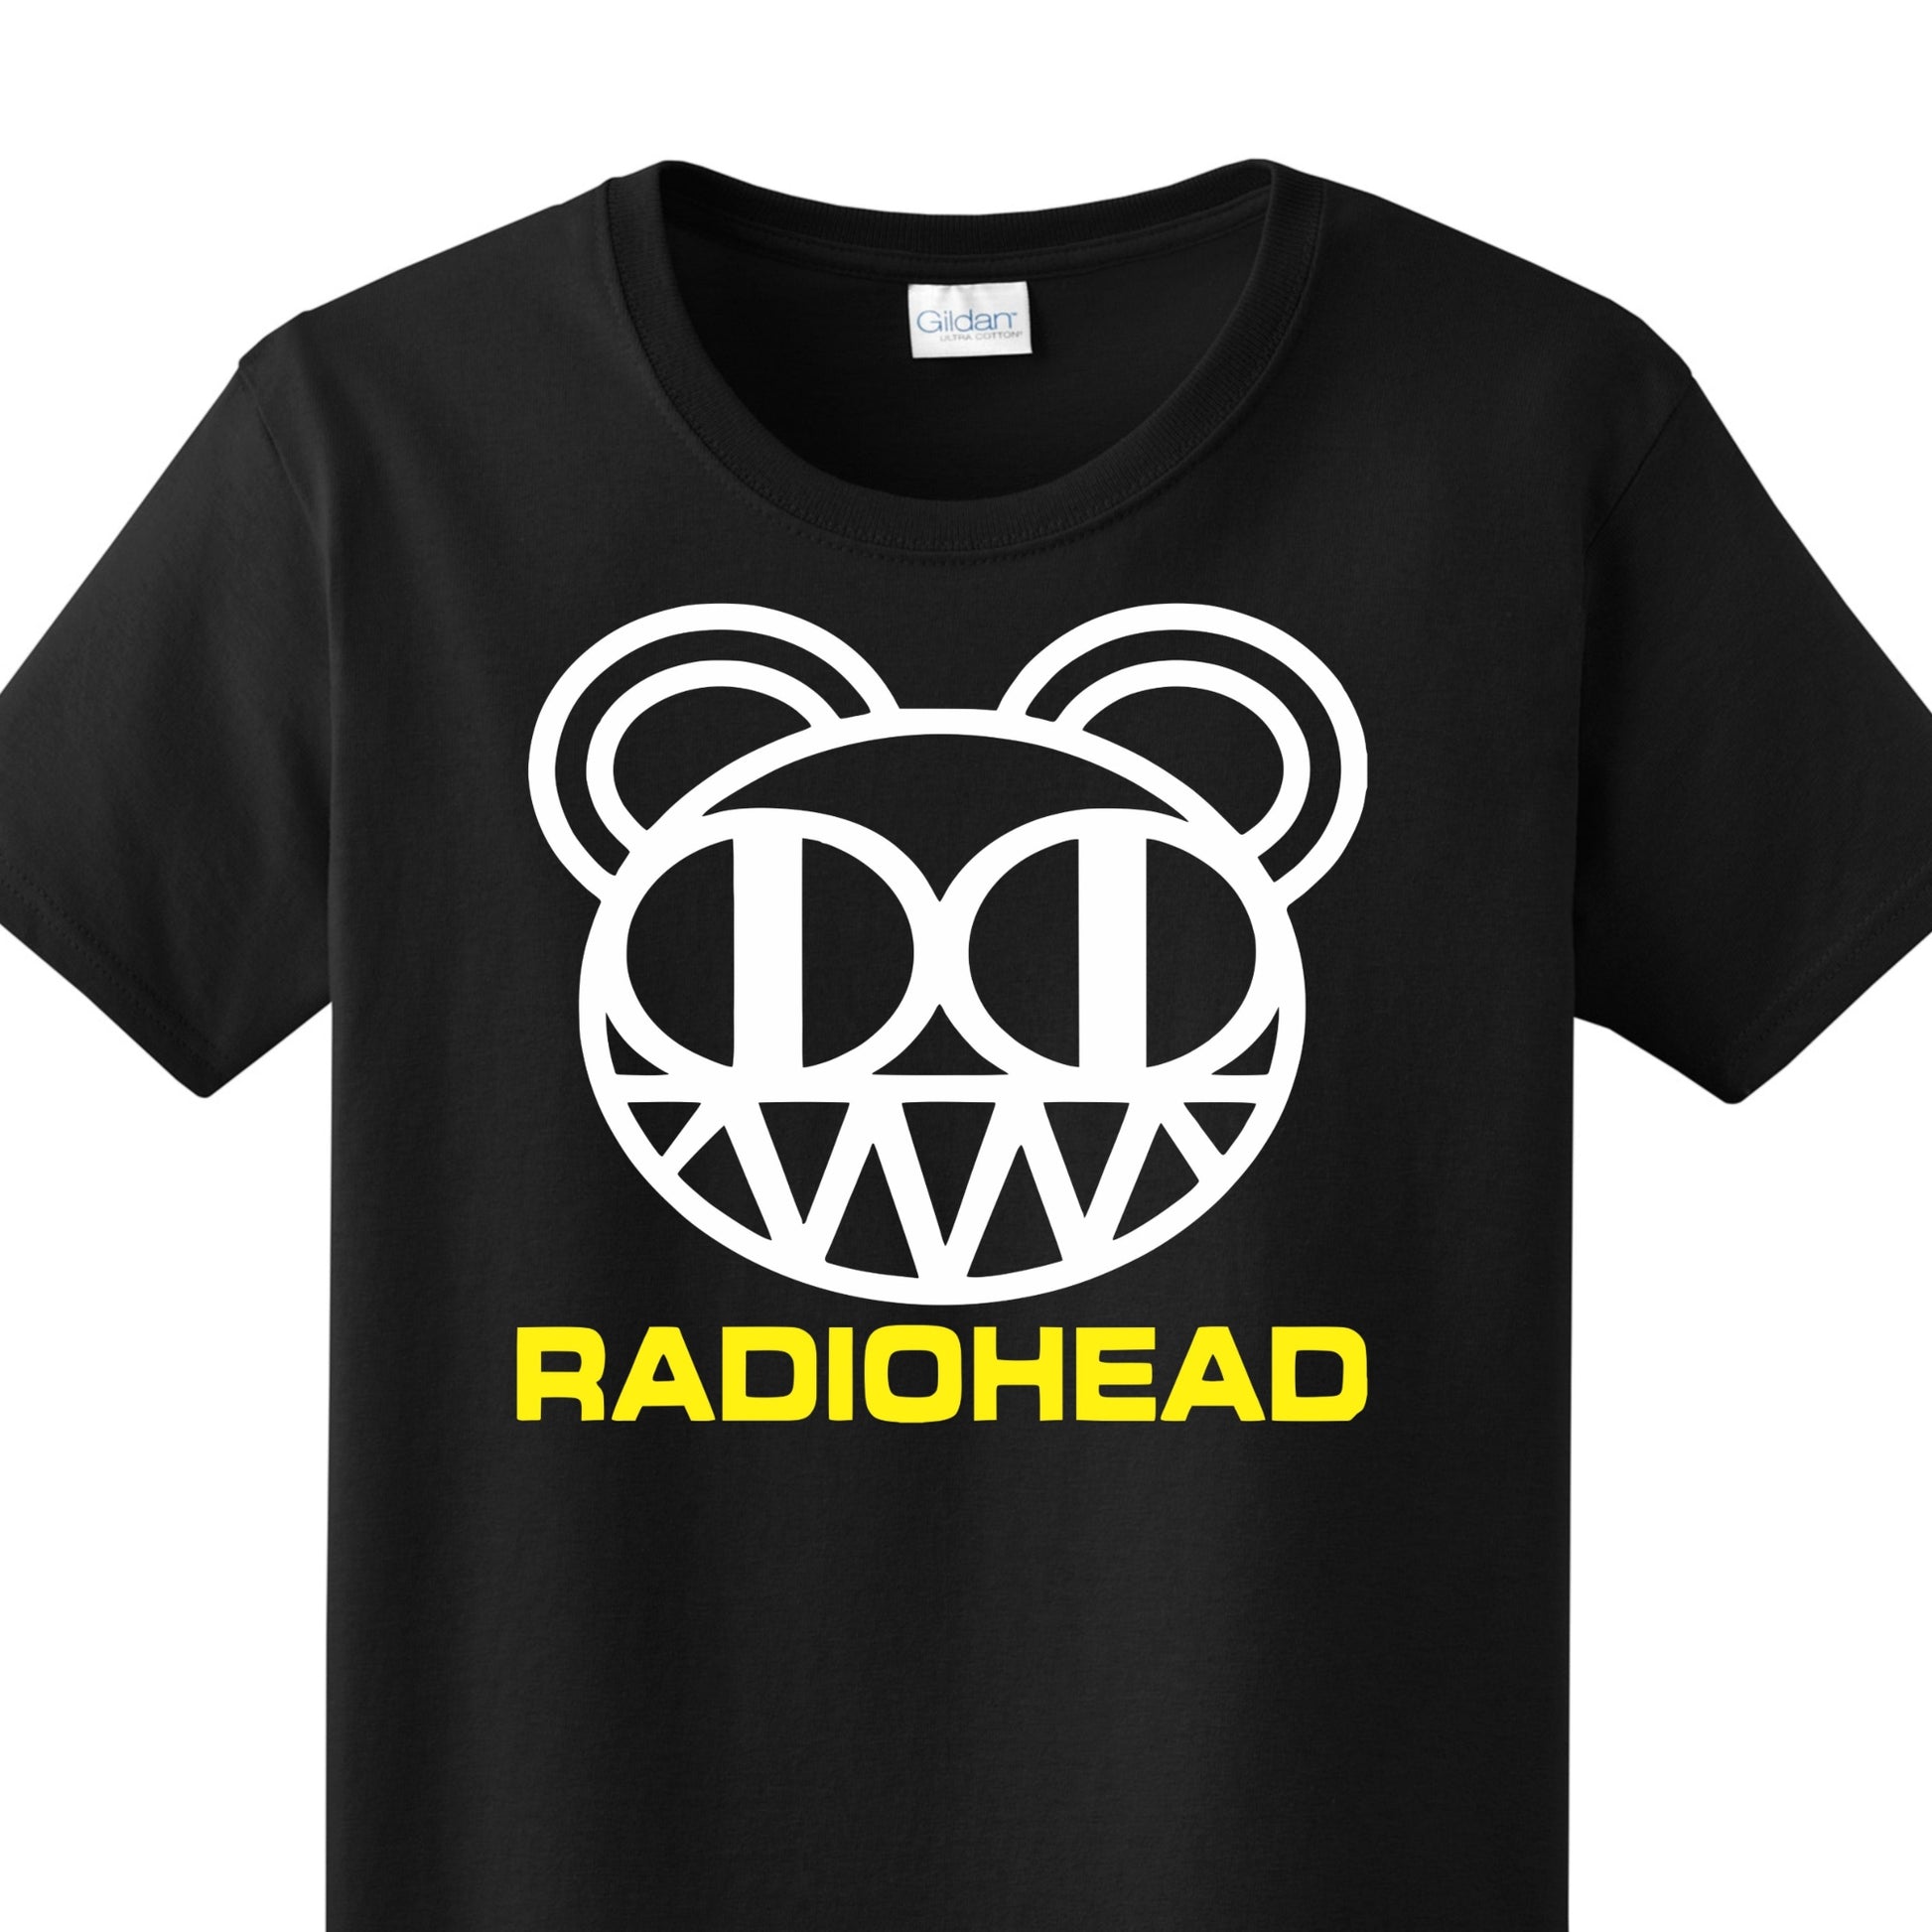 Radical Band  Men's Shirts - Radiohead (Black) - MYSTYLEMYCLOTHING